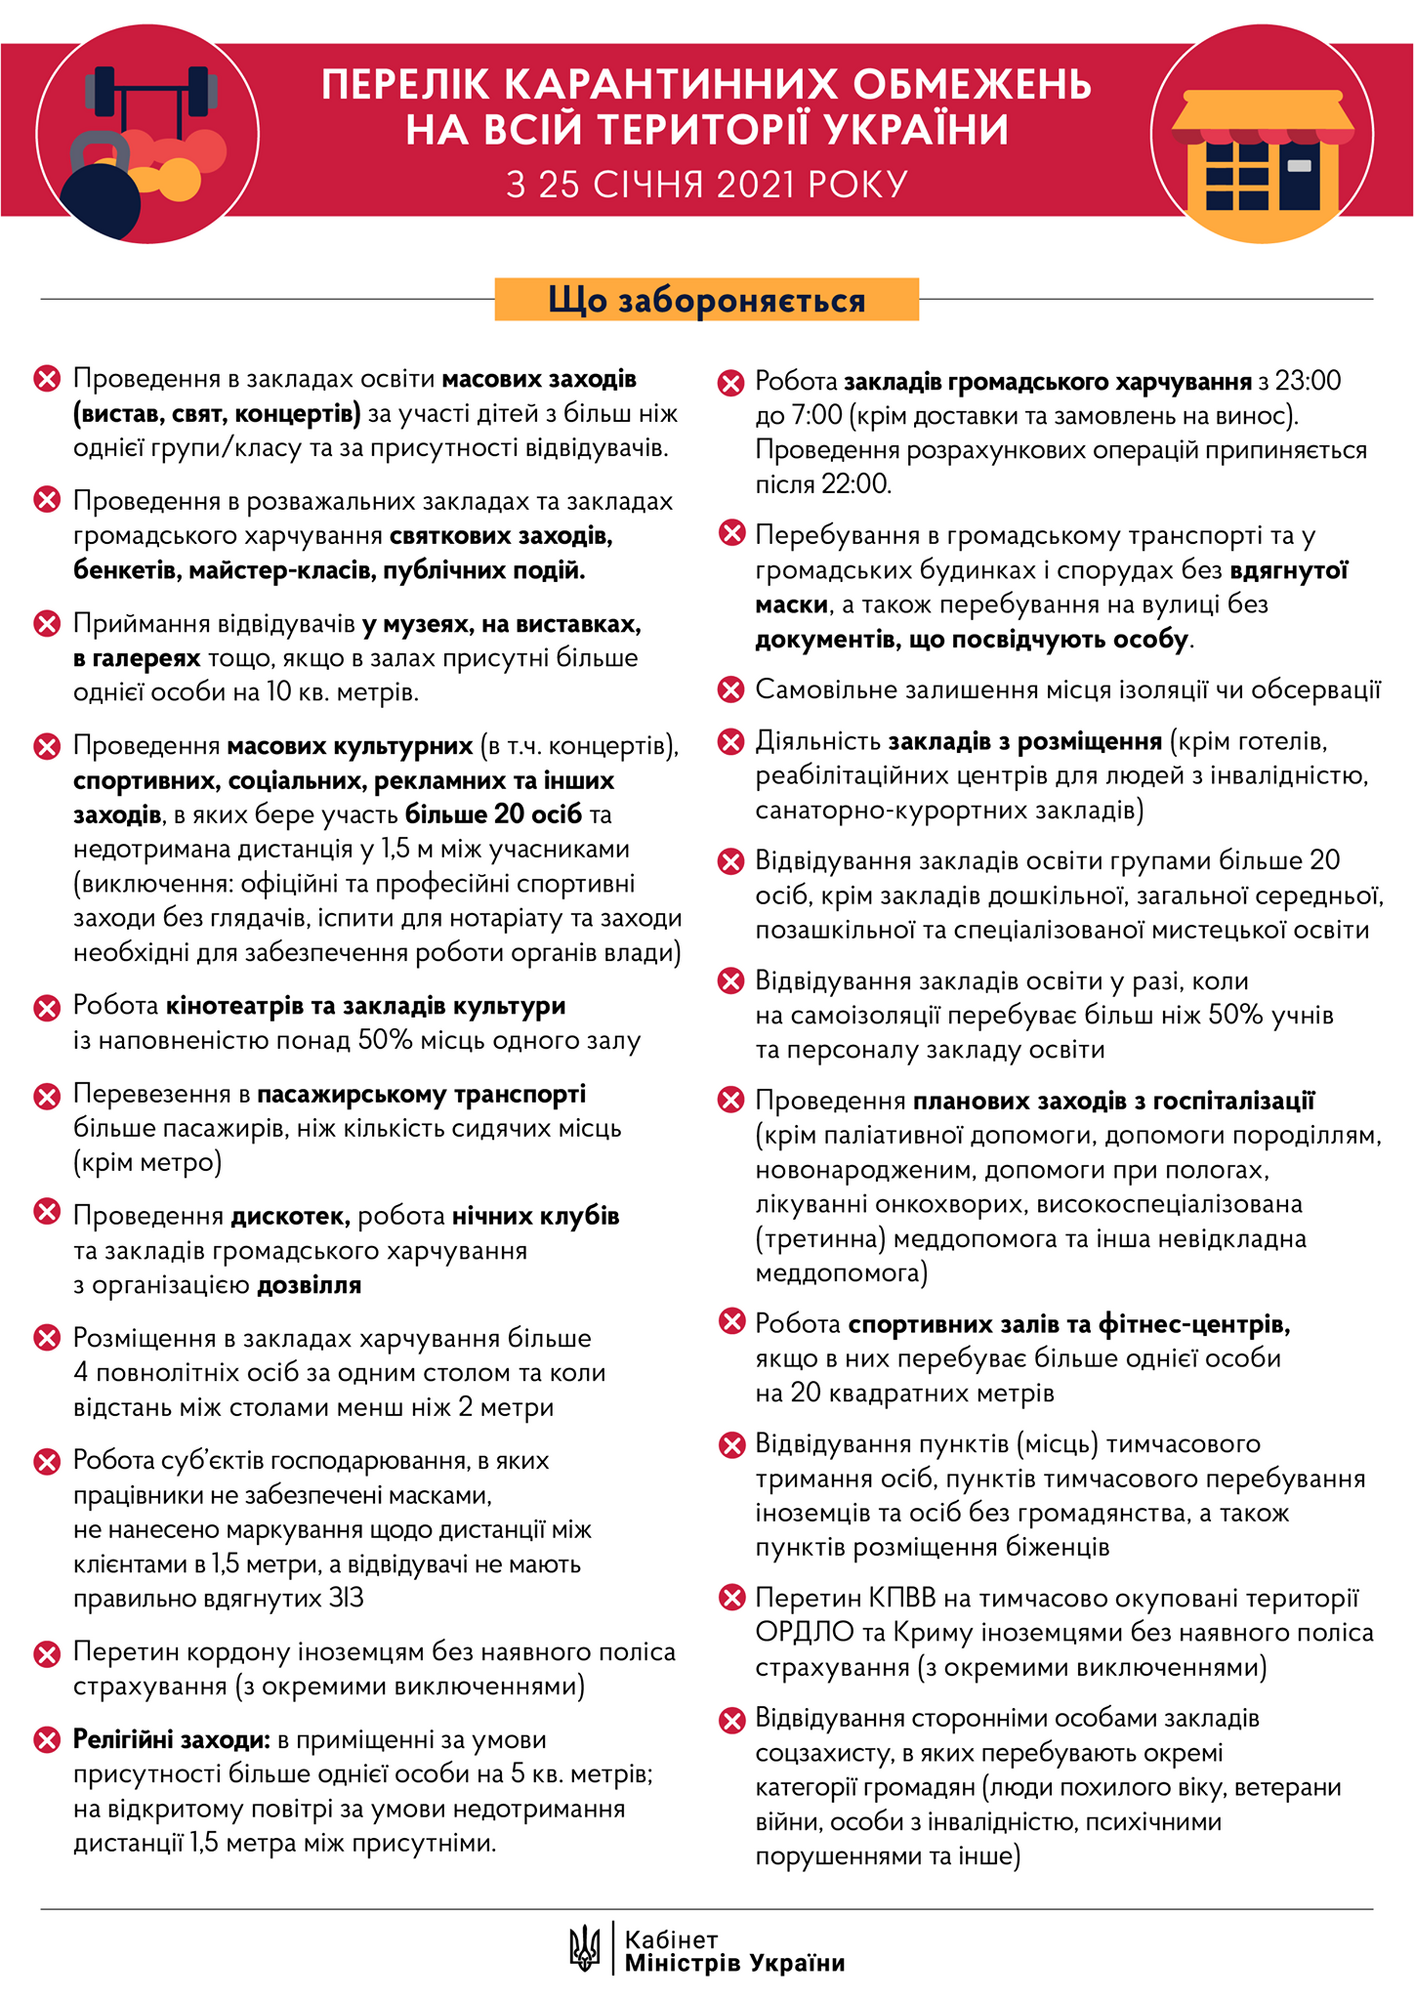 Карантин в Україні: що заборонено з 25 січня